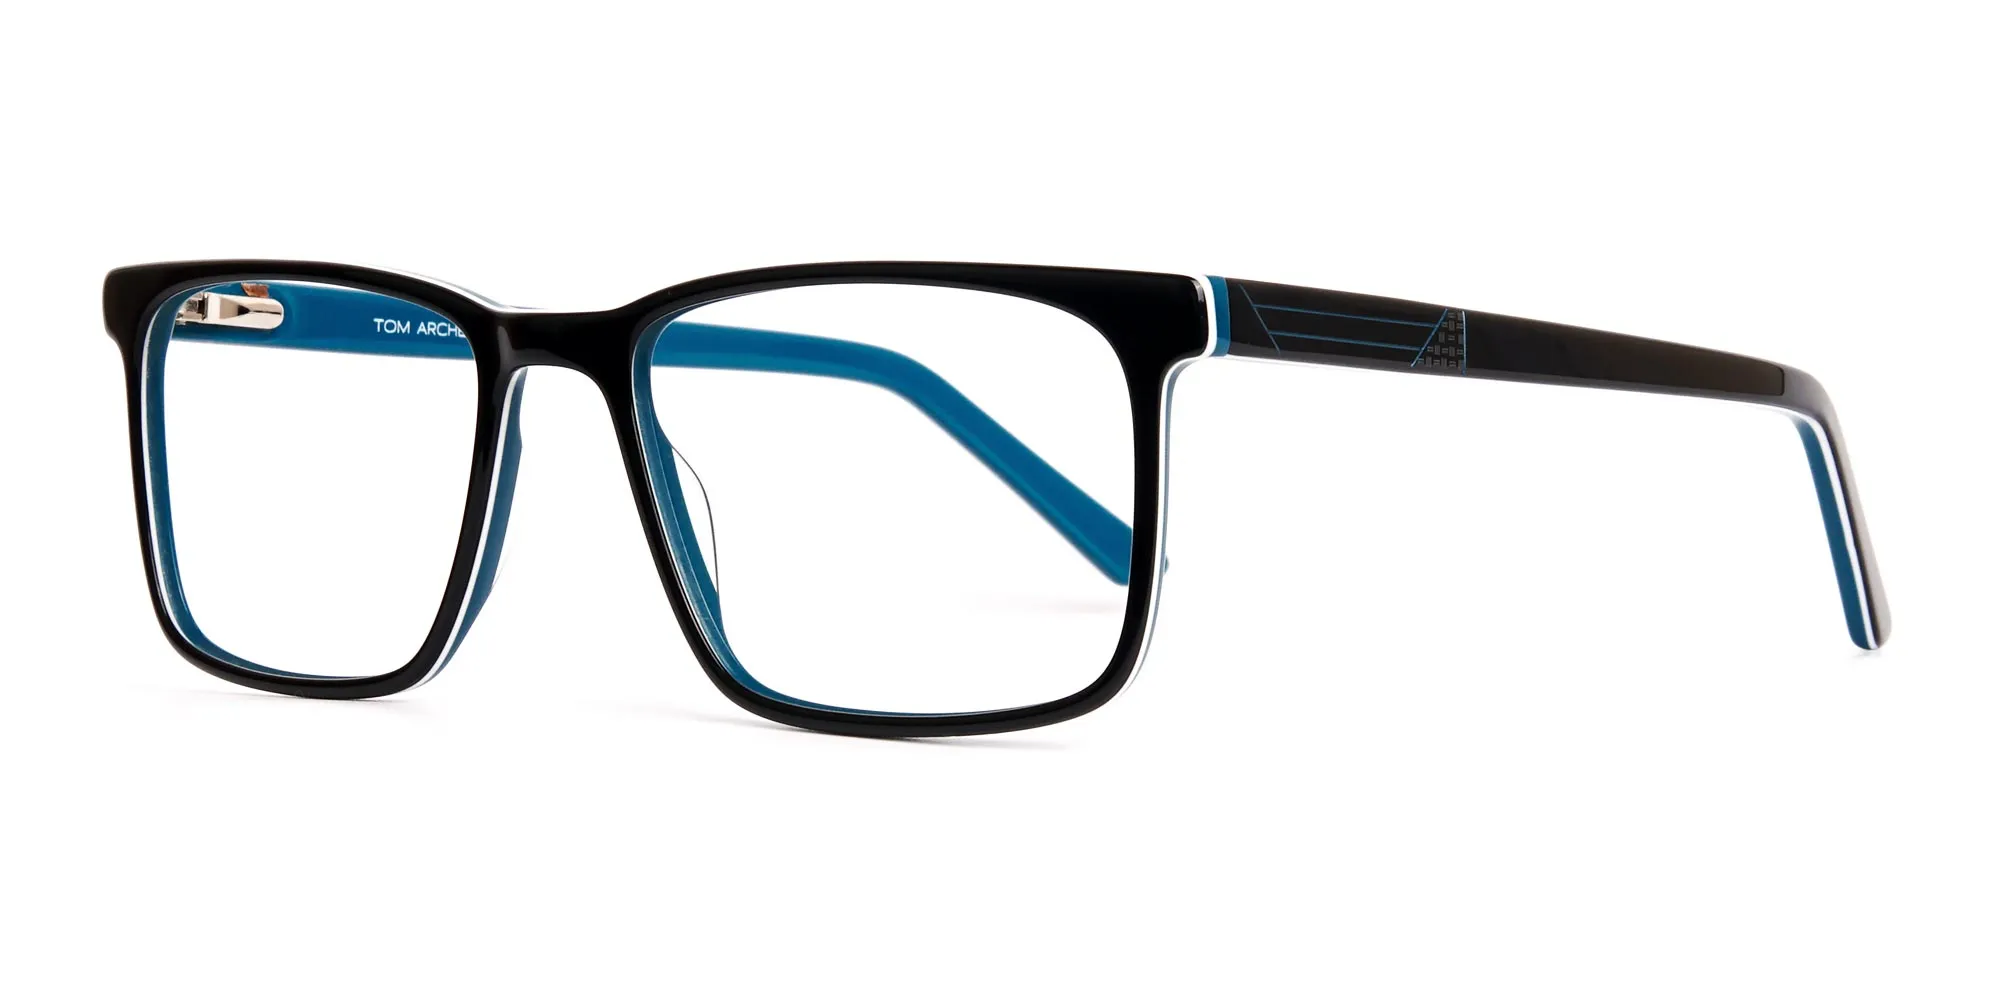 designer Black and teal rectangular glasses frames